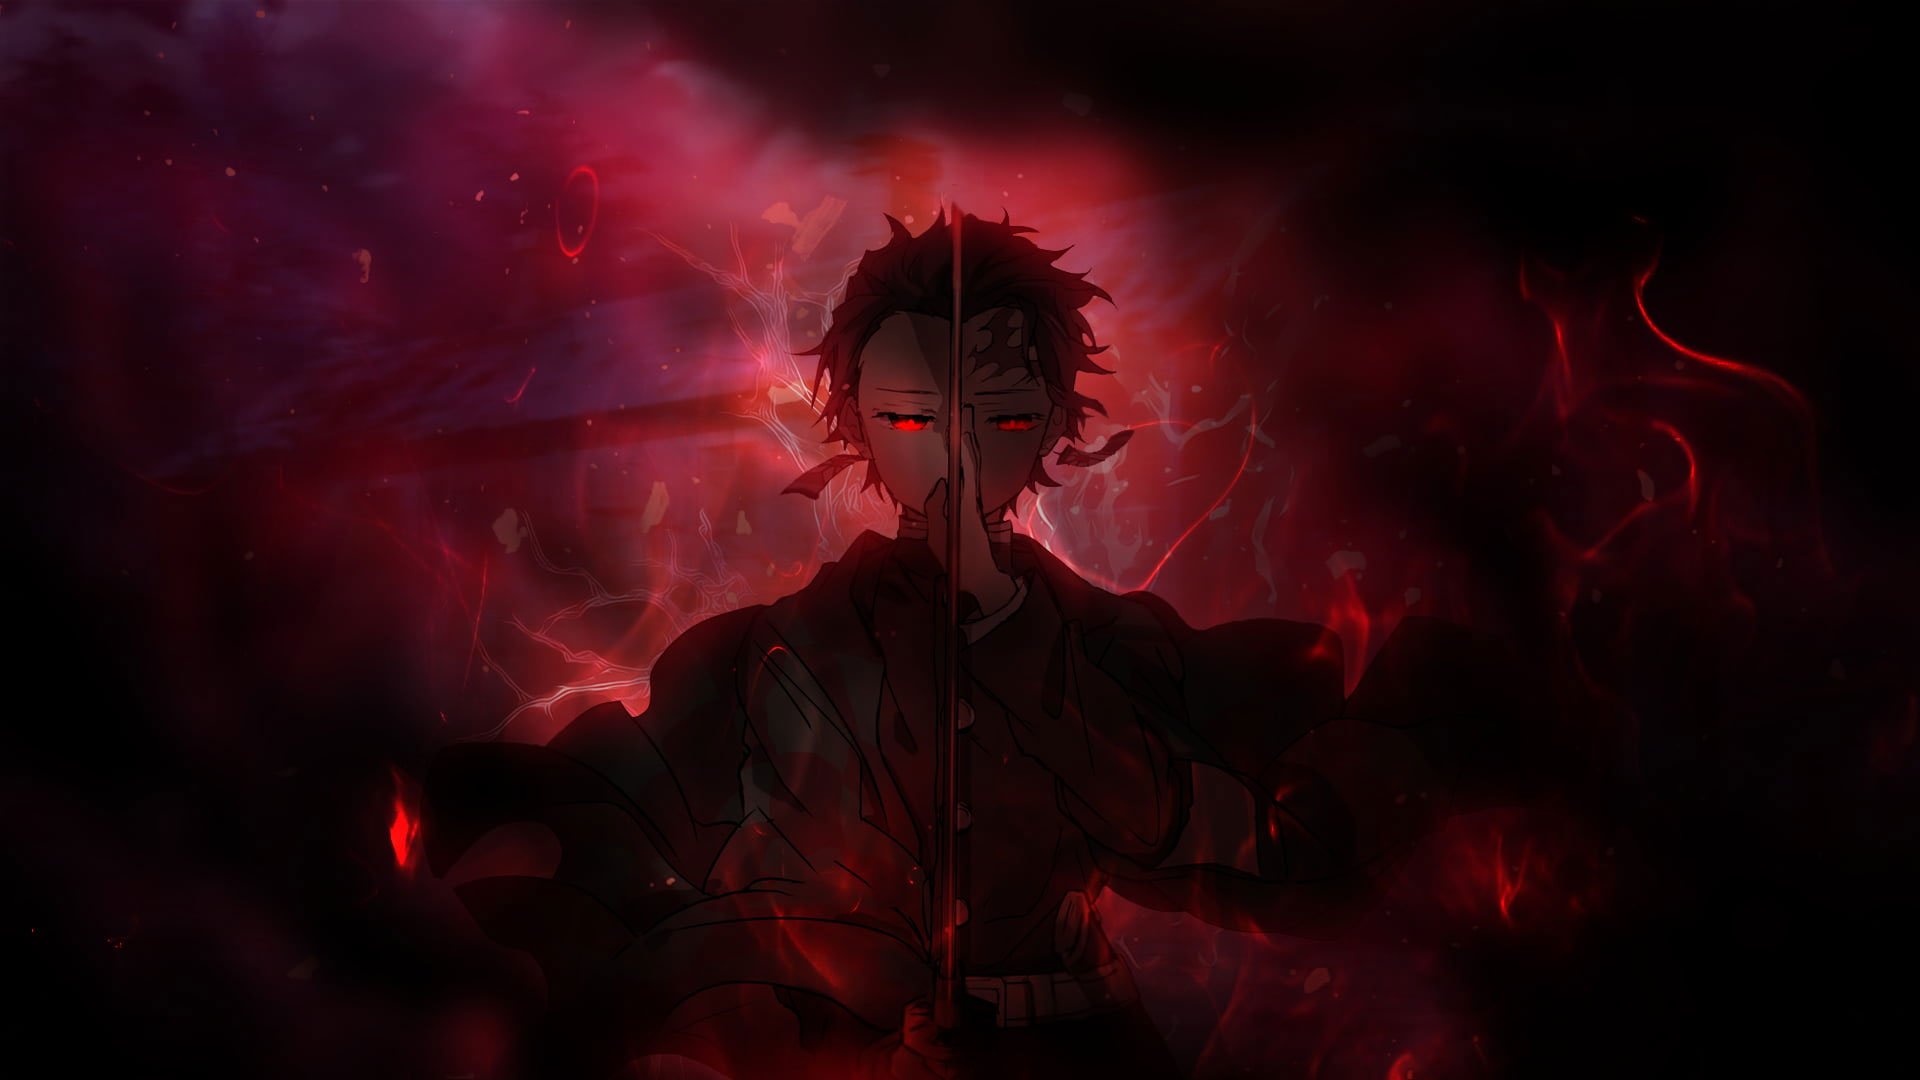 Anime Demon Slayer: Kimetsu no Yaiba HD Wallpaper by かや